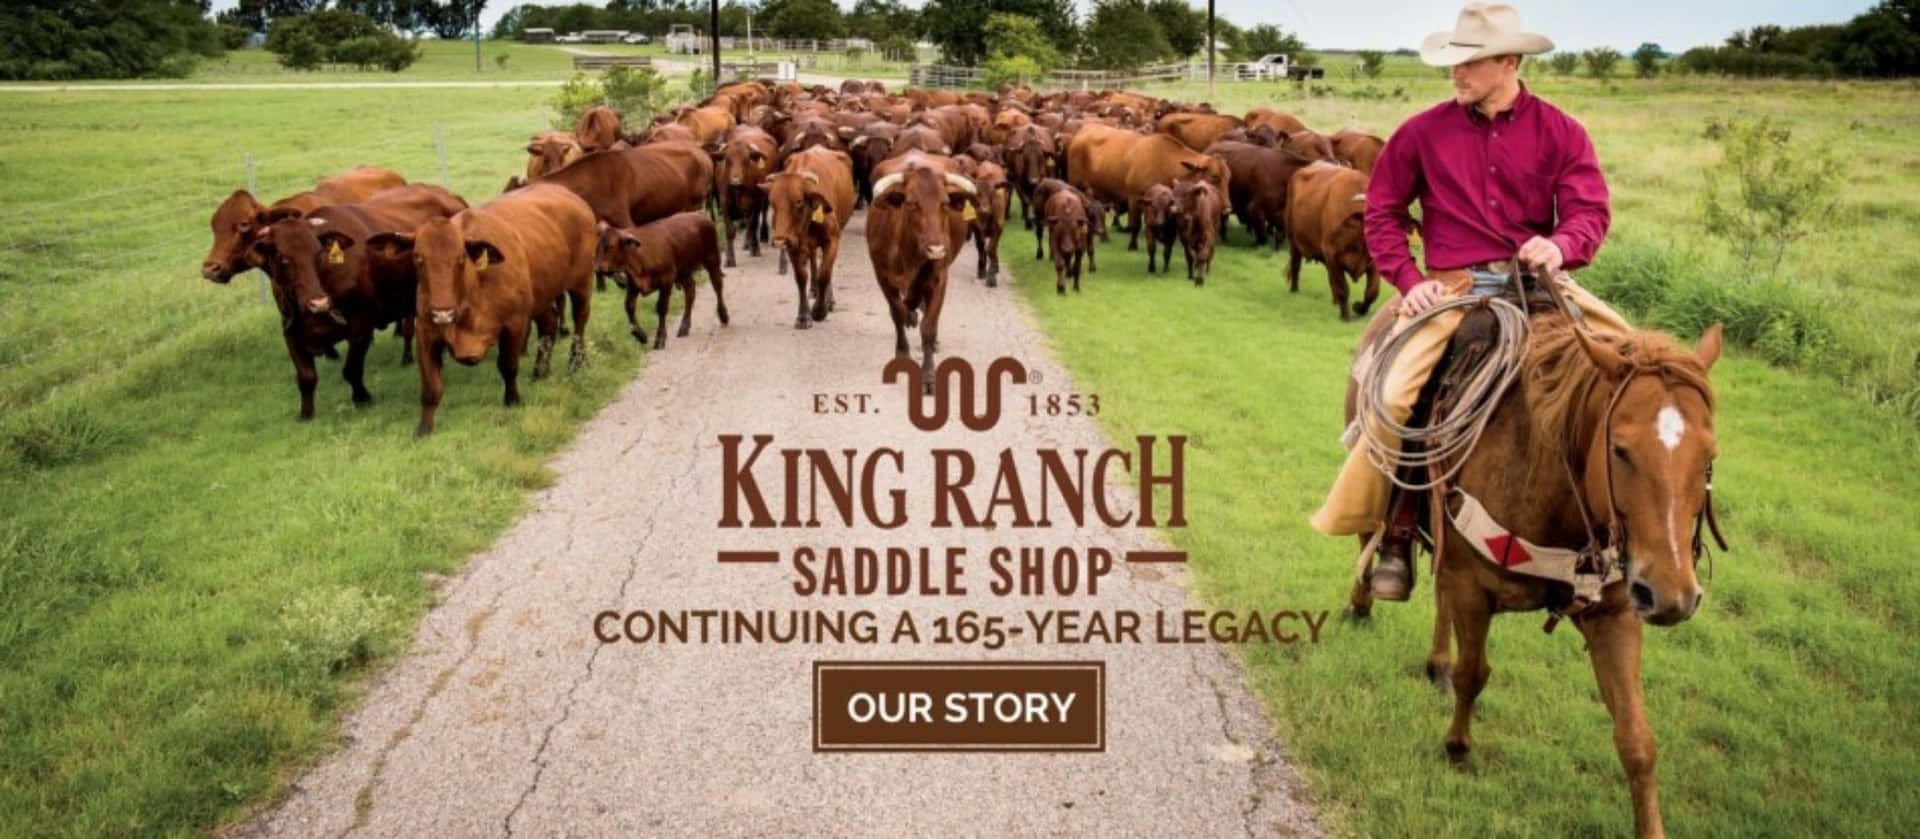 "Embark on an Adventure Through King Ranch Texas"